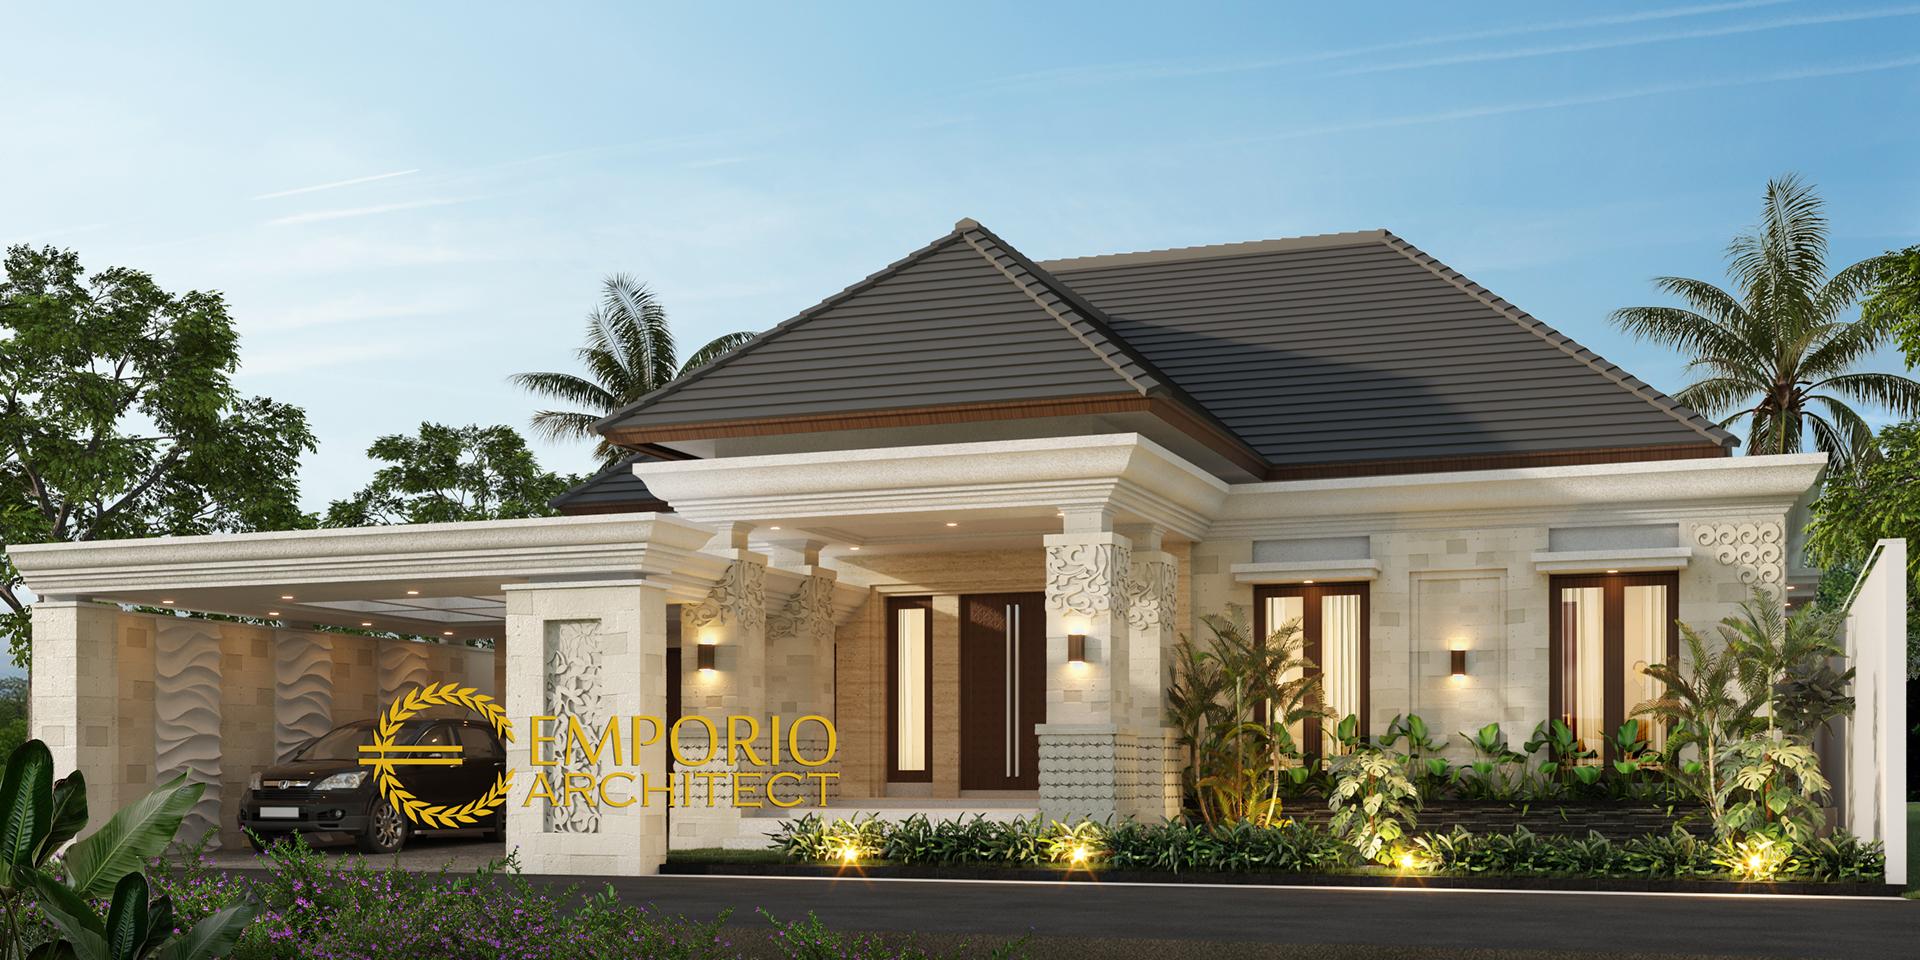 Desain Rumah Villa Bali 1 Lantai Bapak Ian di Palembang, Sumatera Selatan